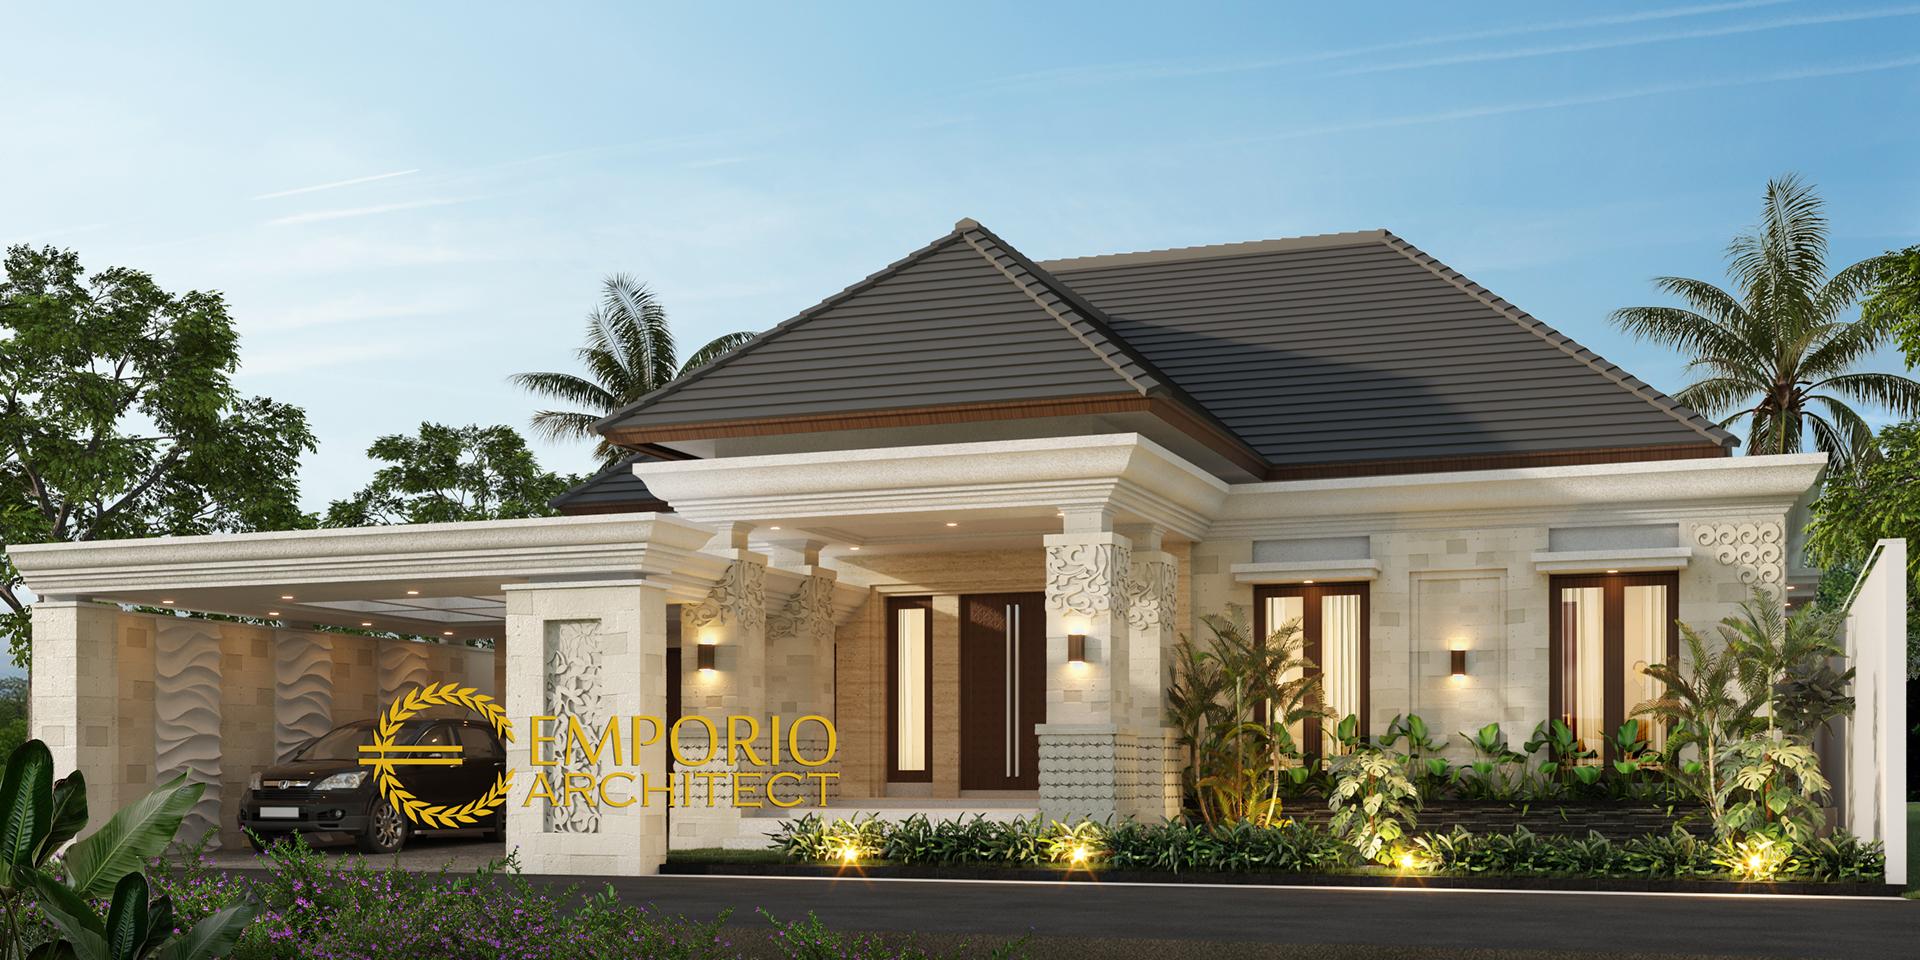 Desain Rumah Villa Bali 1 Lantai Bapak Ian di Palembang, Sumatera Selatan